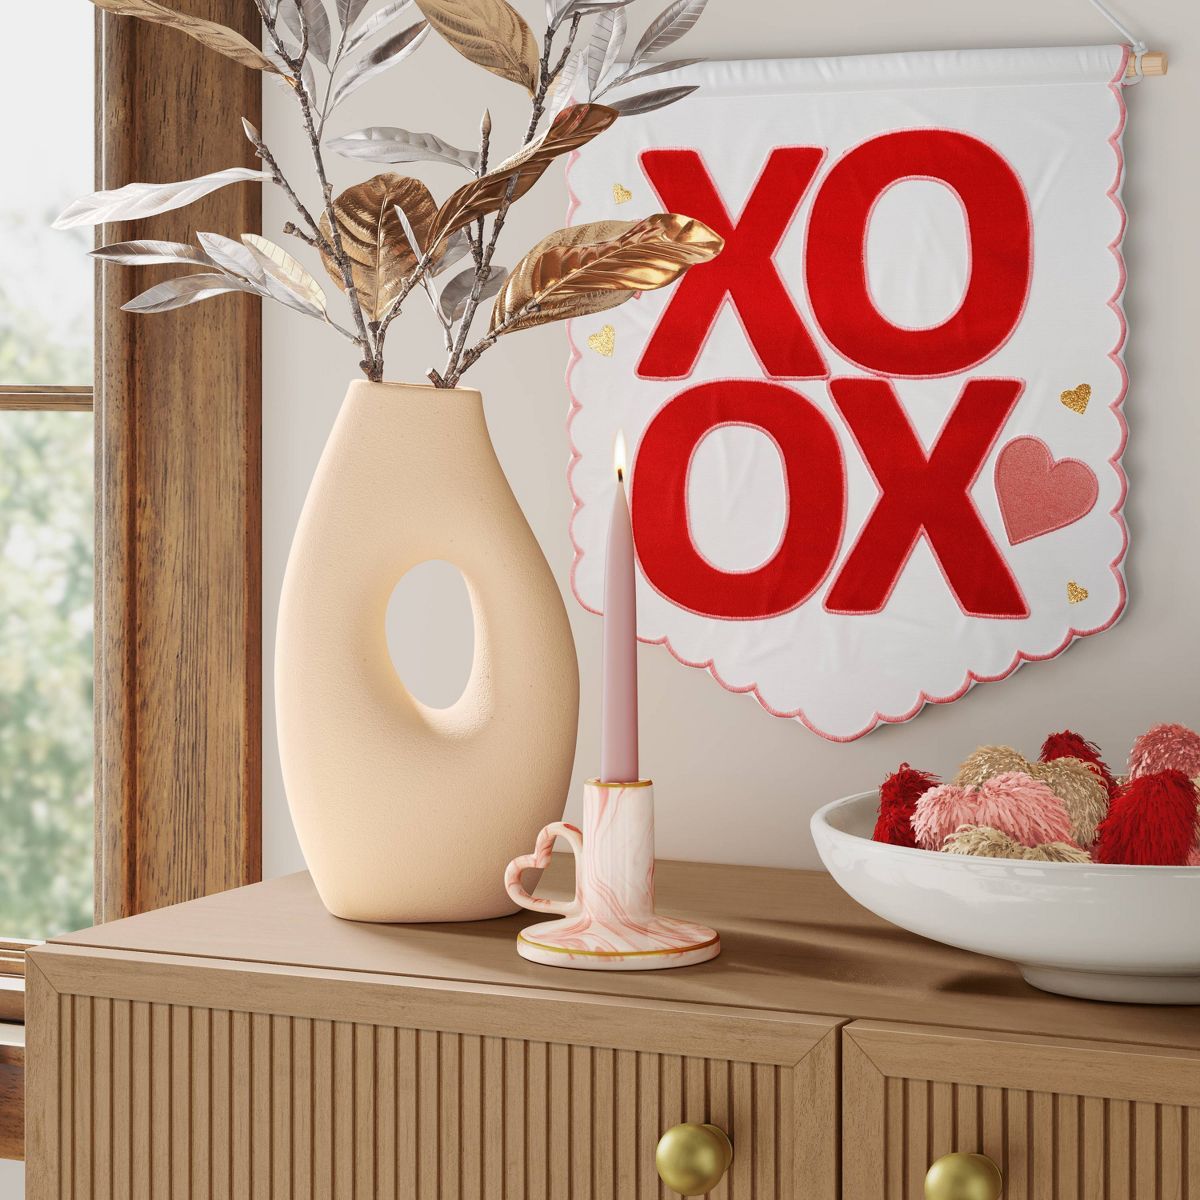 Ceramic Organic Modern Ring Vase - Threshold™ | Target